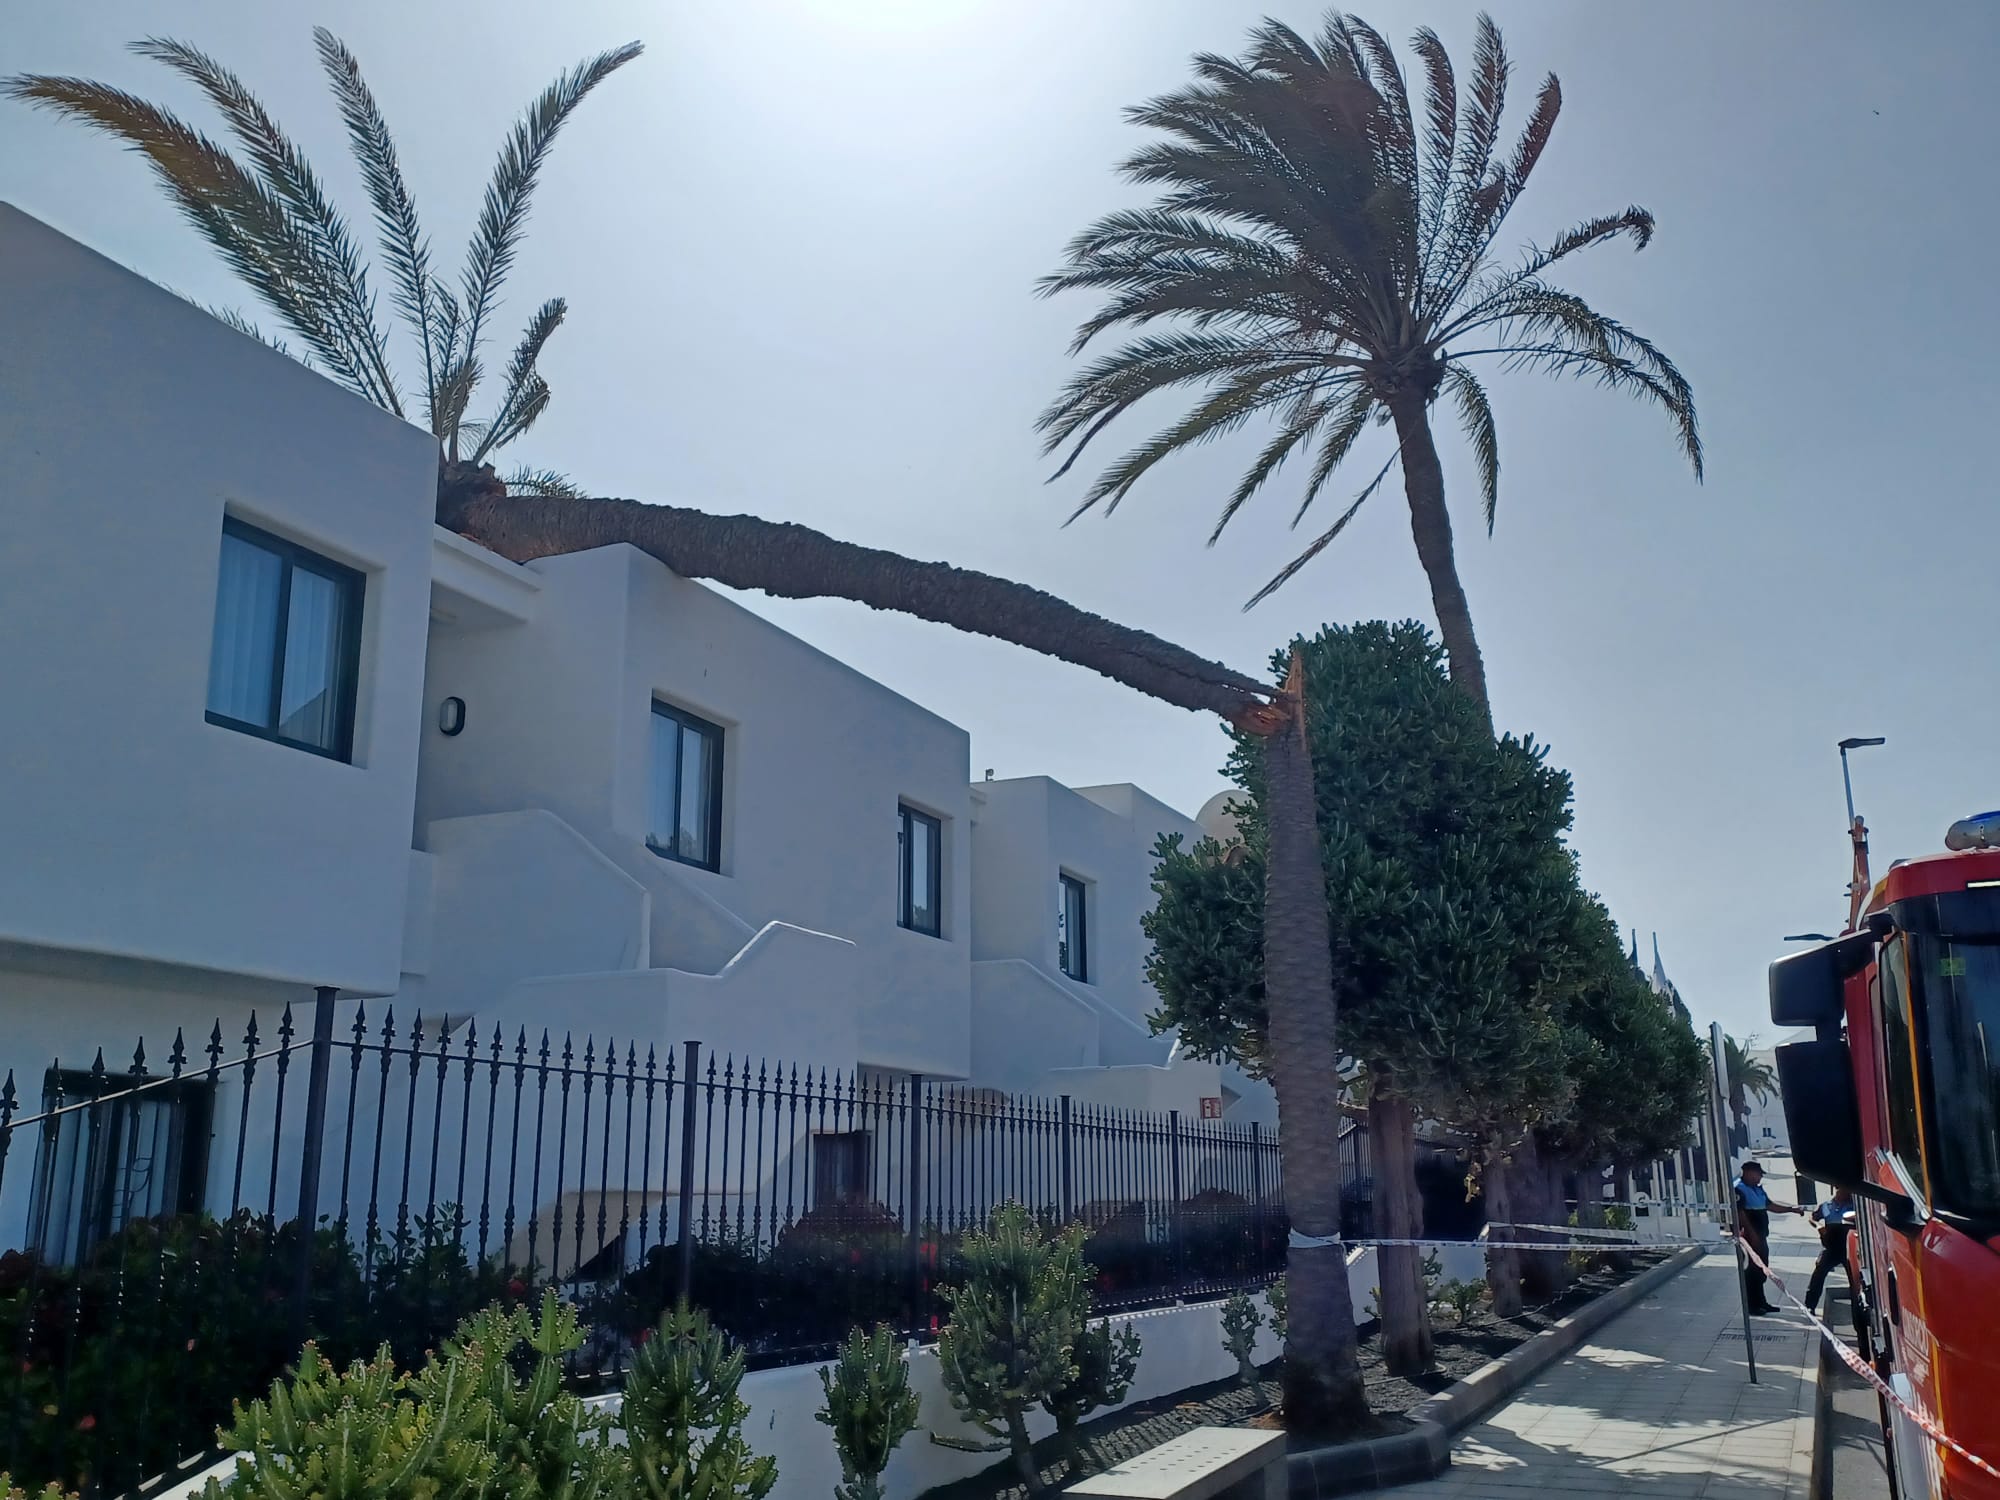 Incidentes por el viento en Lanzarote